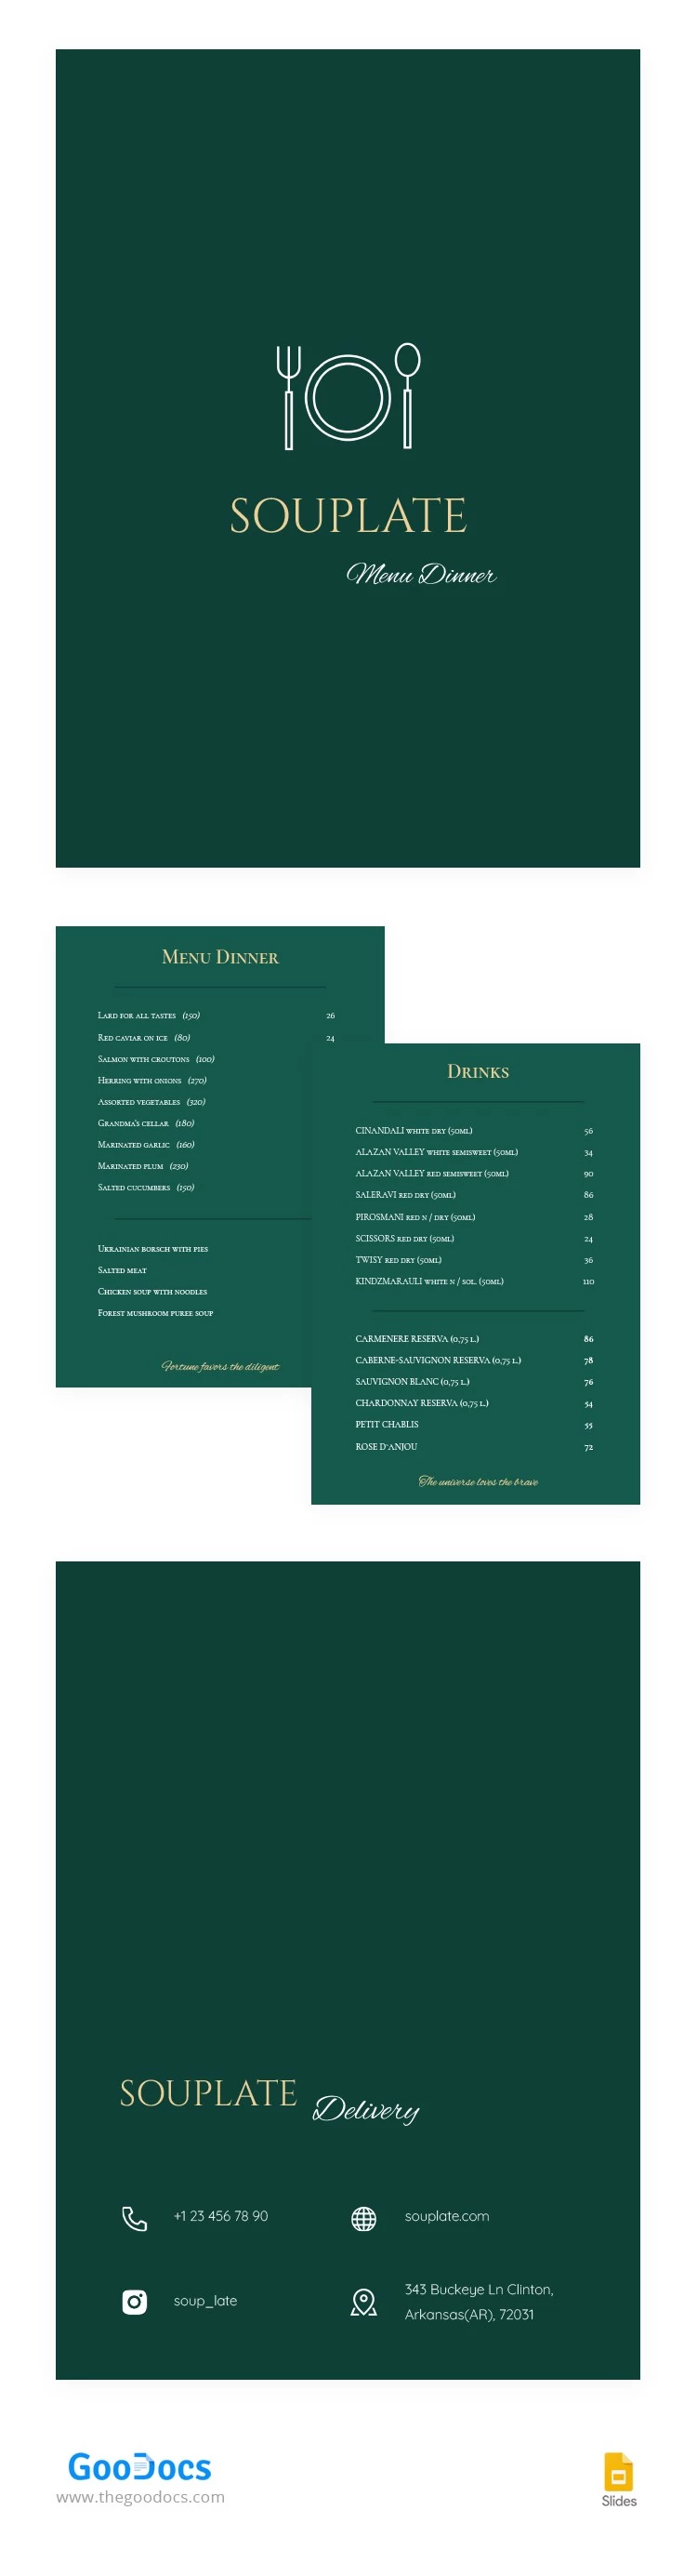 Menu do Restaurante Verde Jantar - free Google Docs Template - 10064319